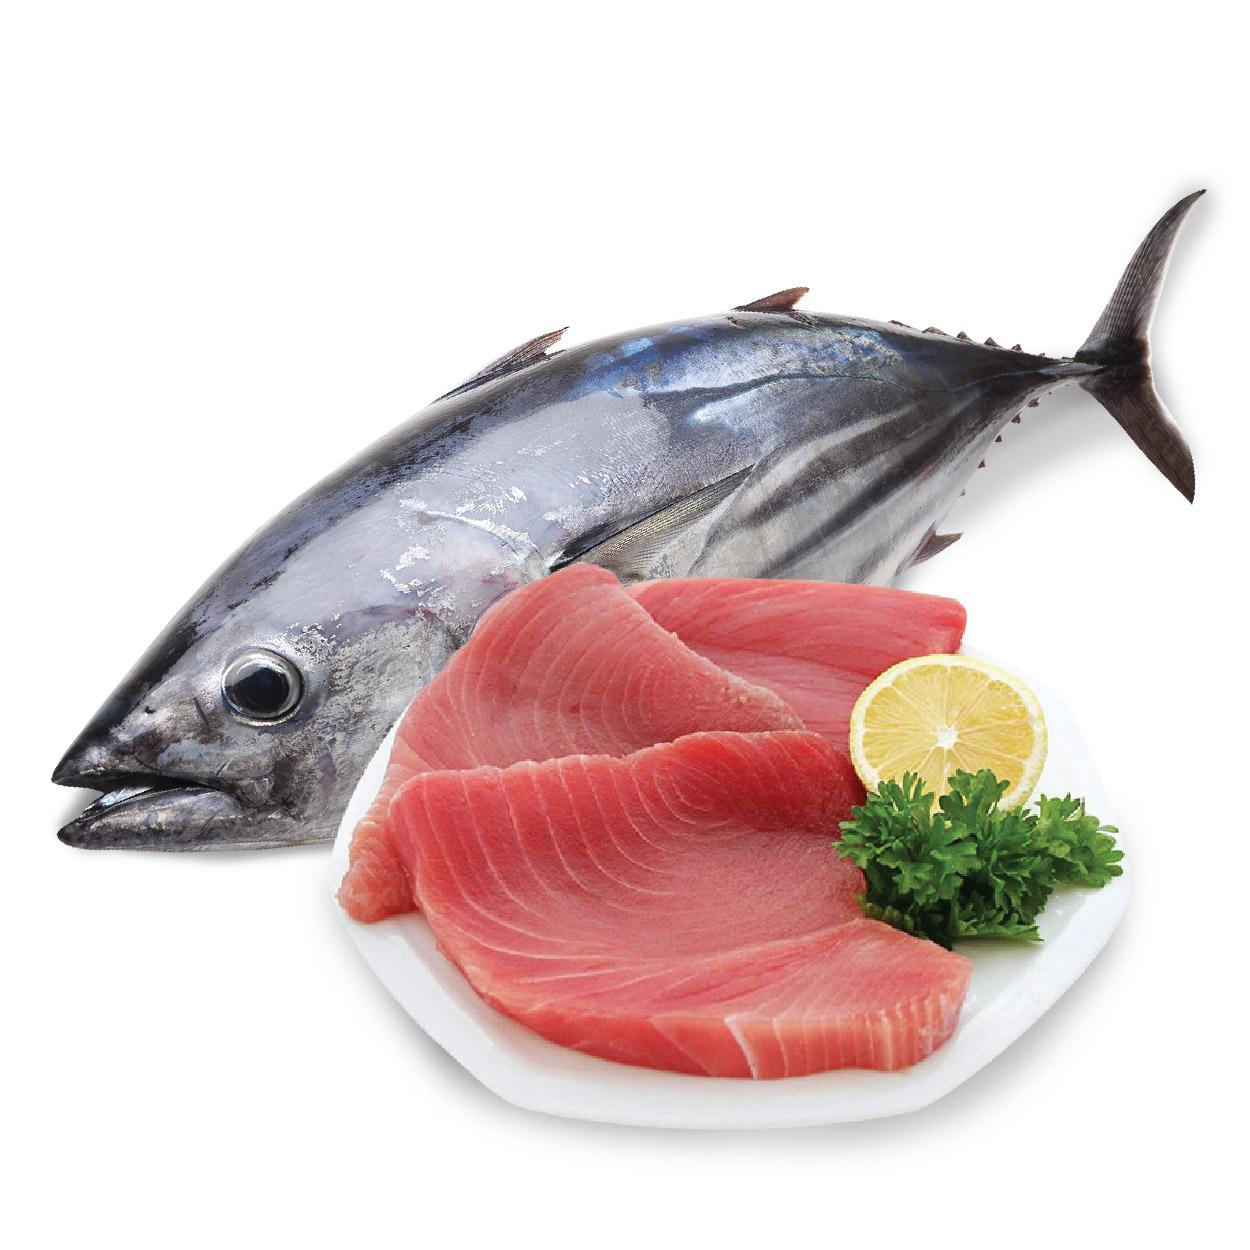 Chế biến đặc sản với 350 gram cá ngừ đại dương